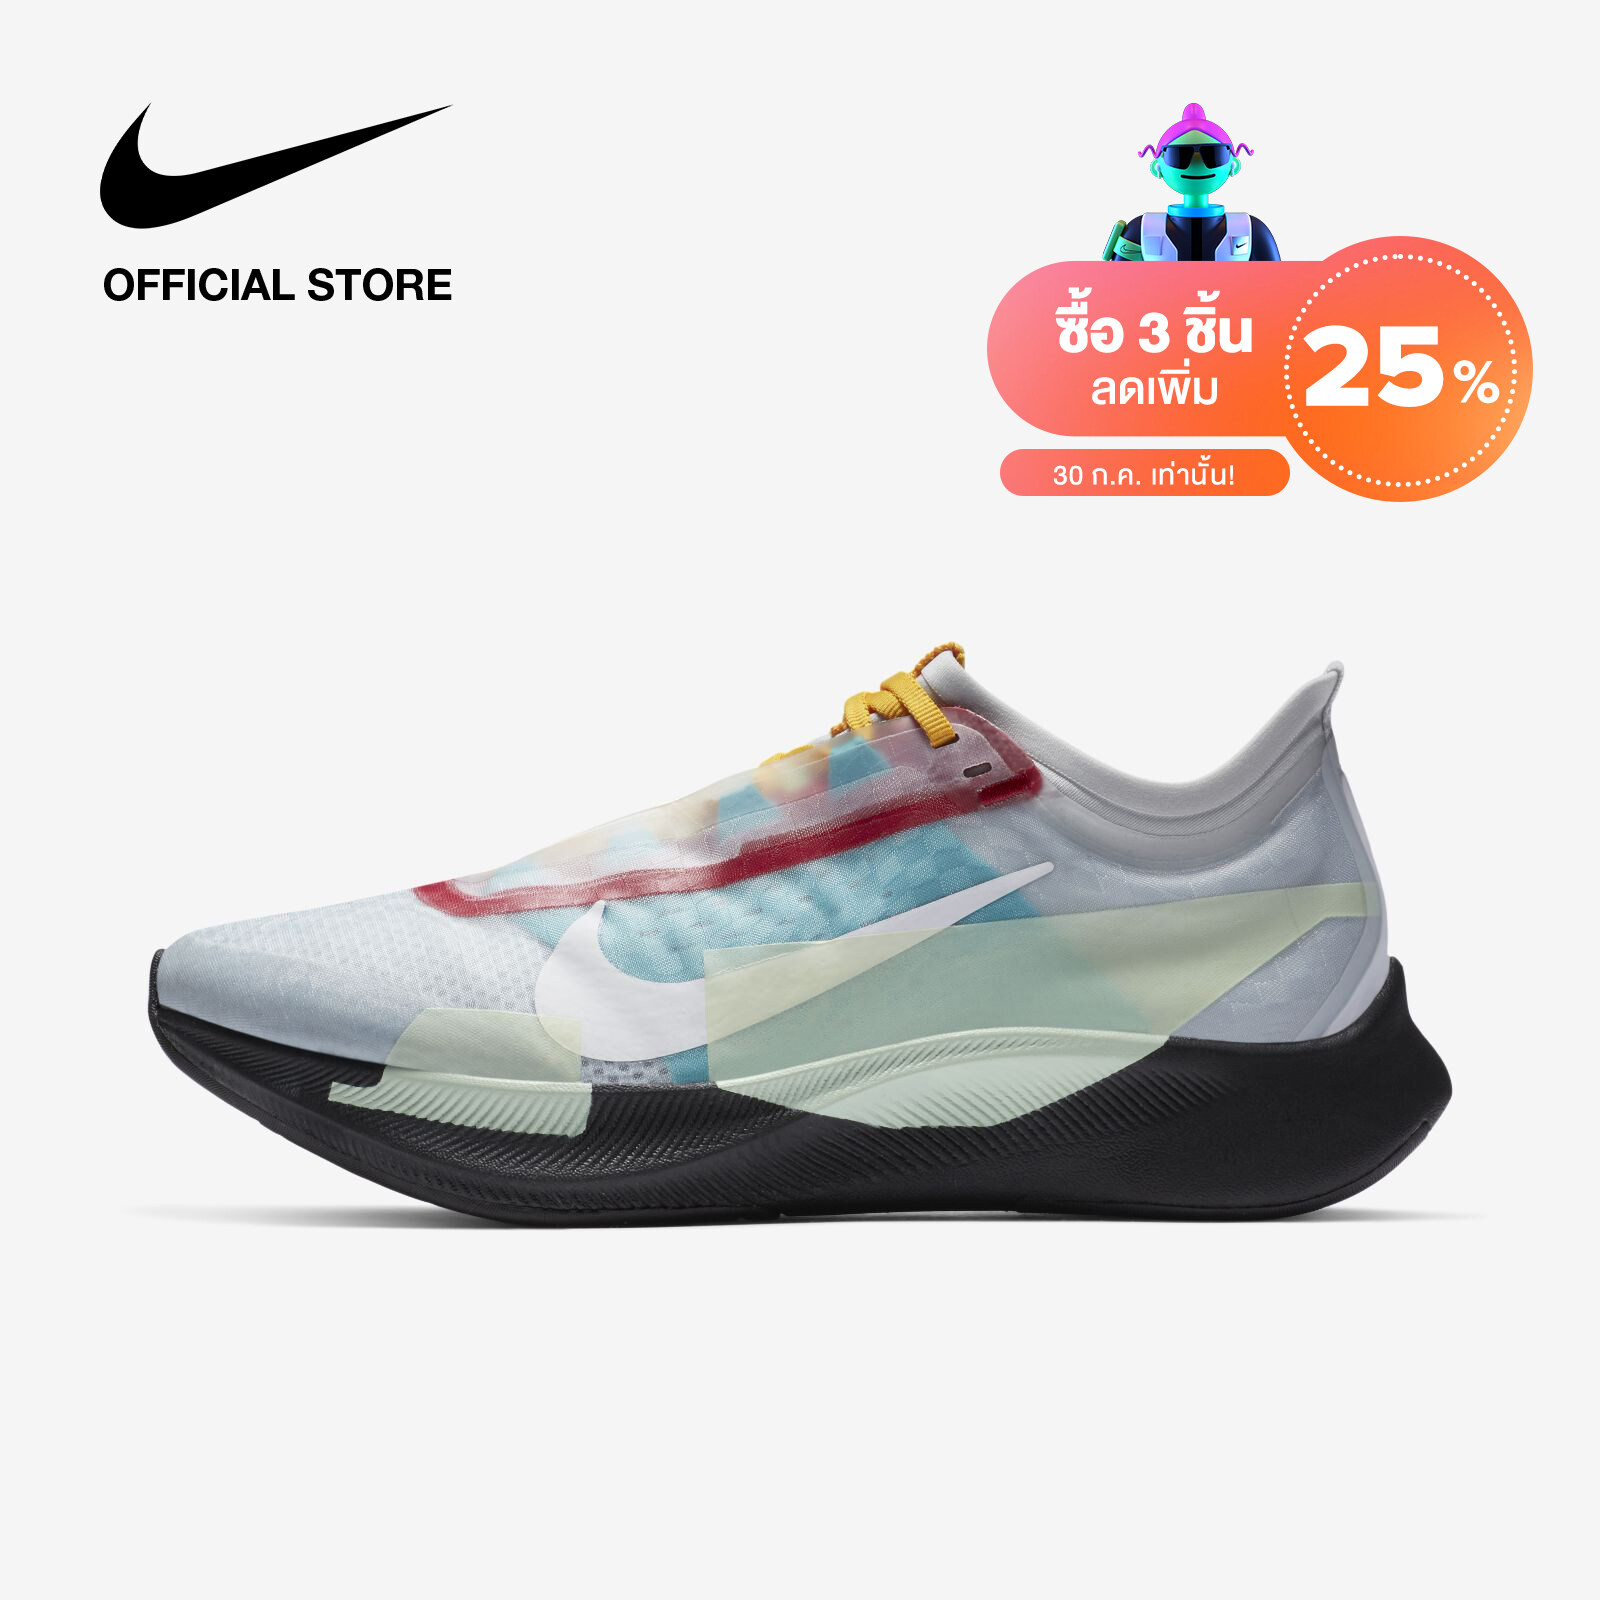 Nike Womens Zoom Fly 3 Premium Running Shoes - Grey ไนกี้ รองเท้าวิ่งผู้หญิง ซูม ฟลาย 3 พรีเมี่ยม - สีเทา. 